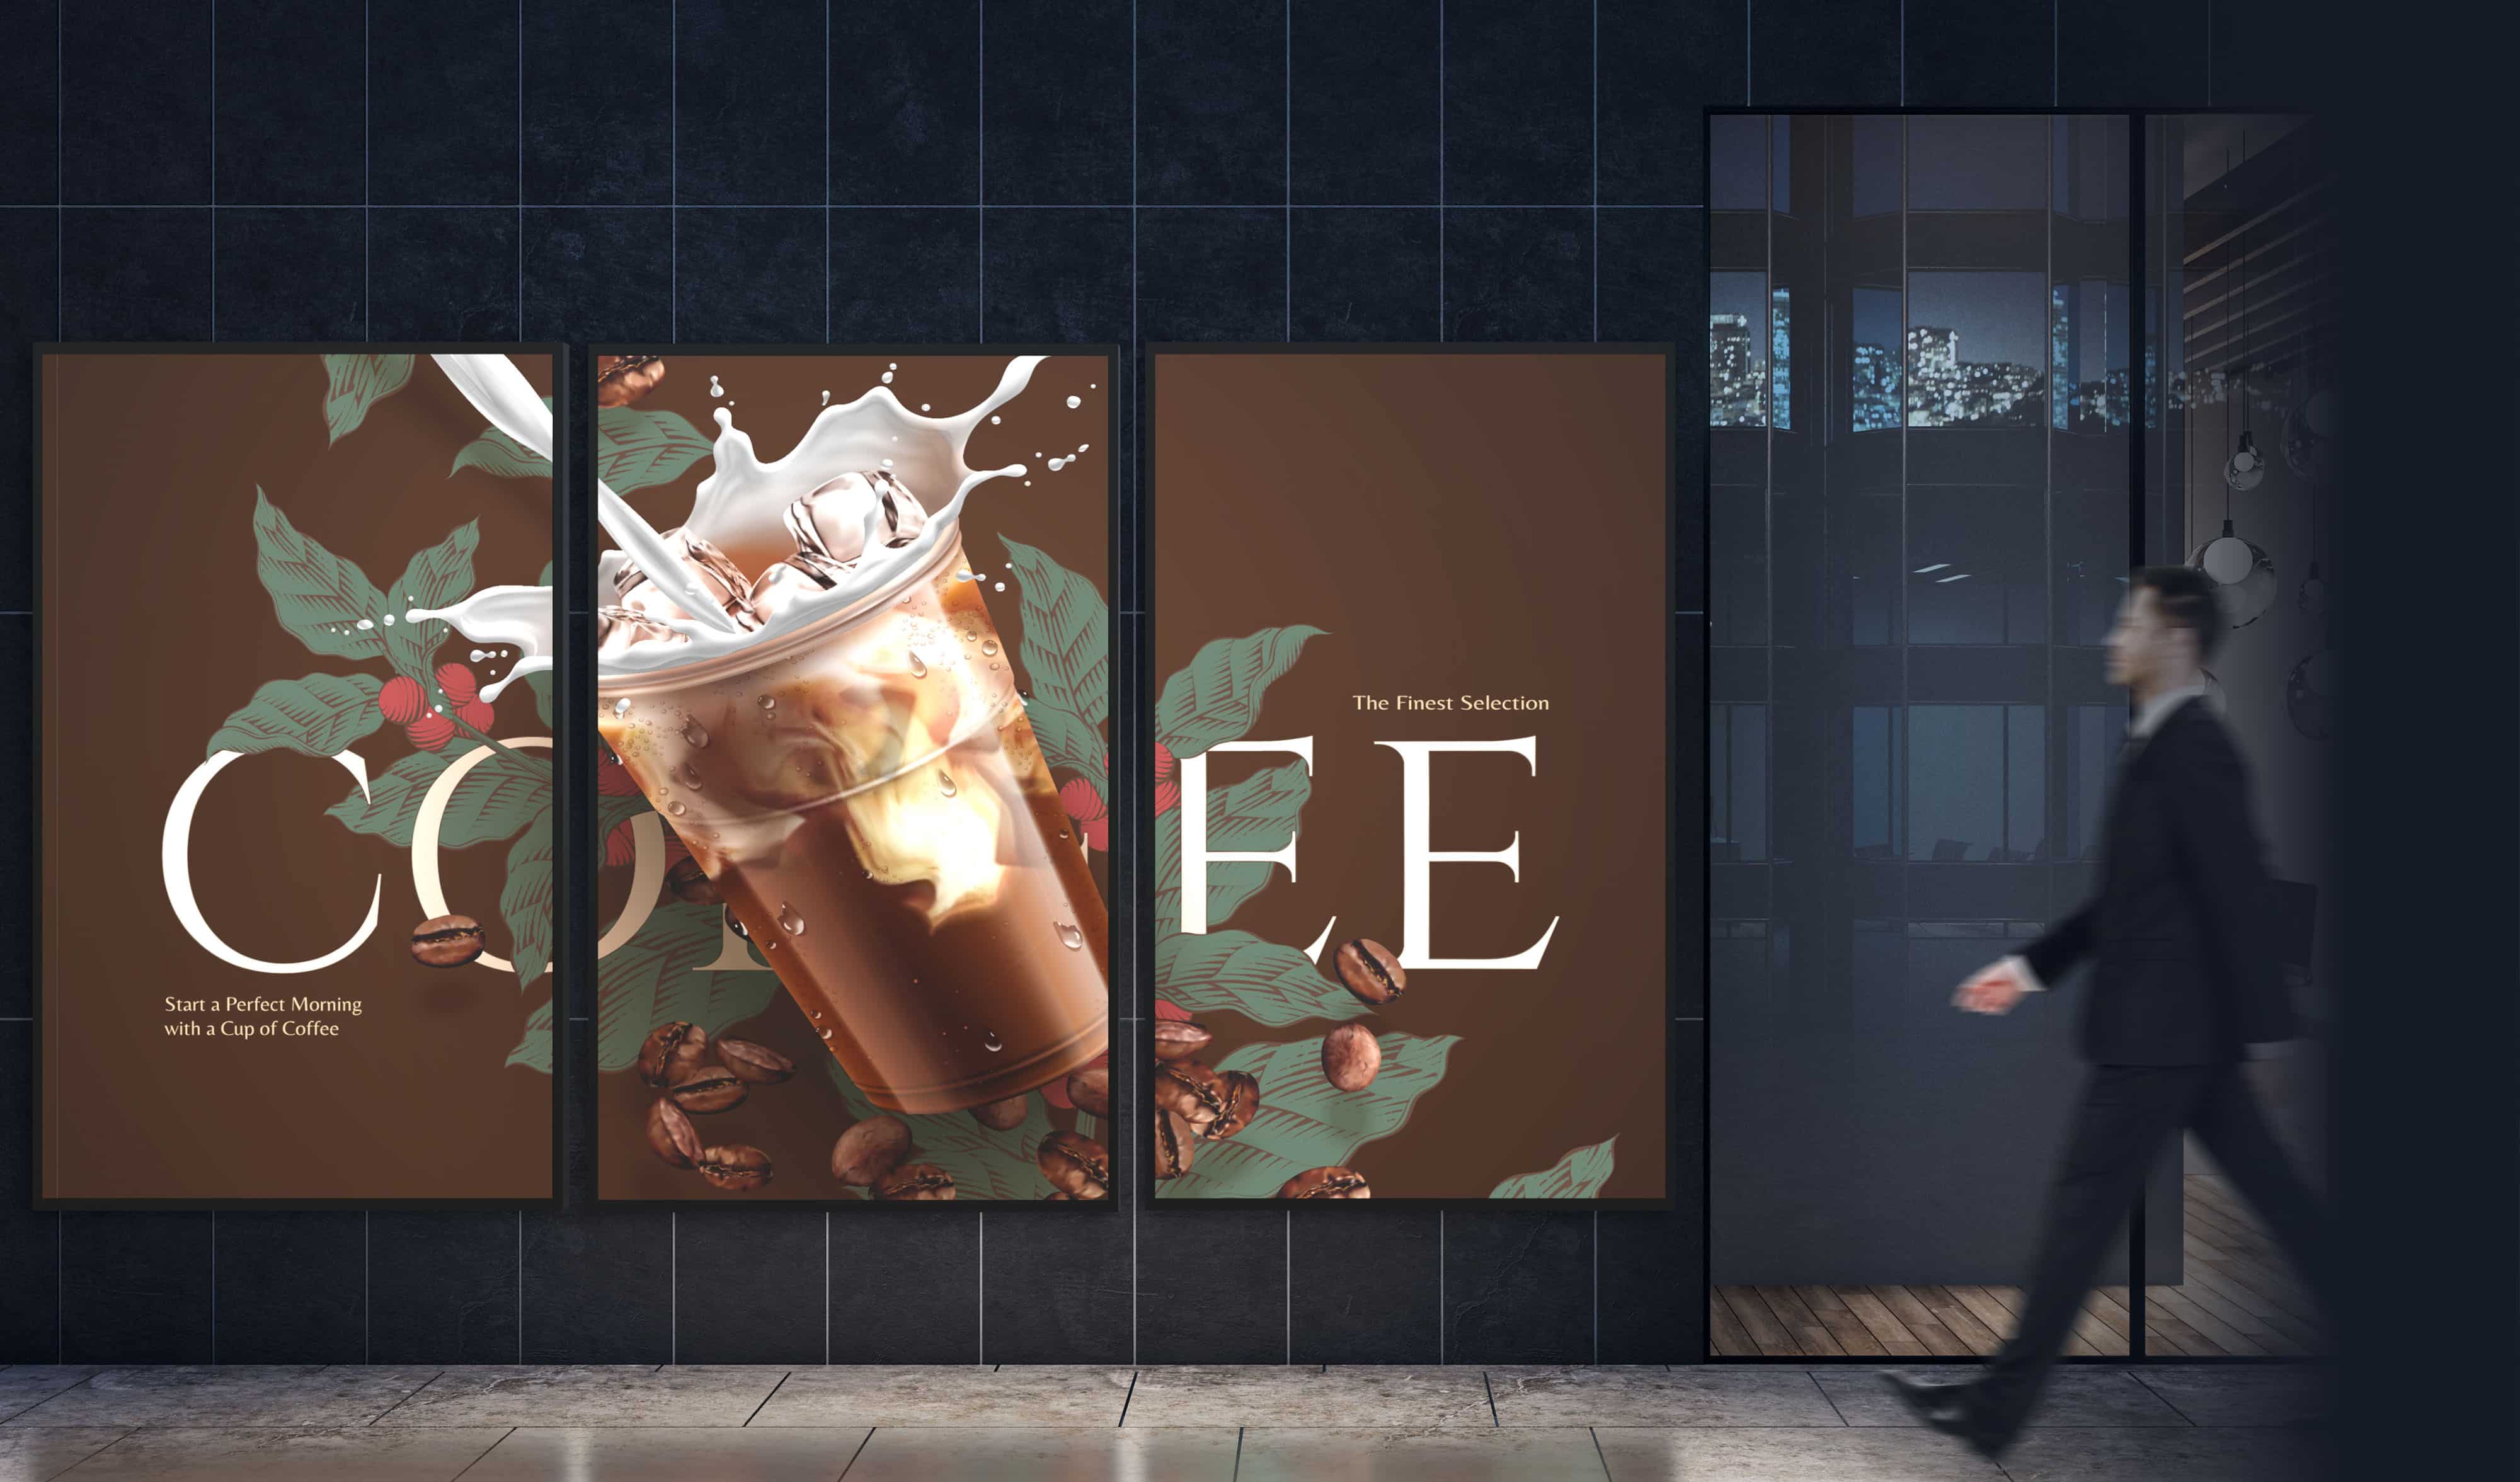 Un uomo d'affari passa davanti a una segnaletica digitale composta da tre display della serie N che mostrano un singolo annuncio pubblicitario per una bevanda al caffè sui tre display.